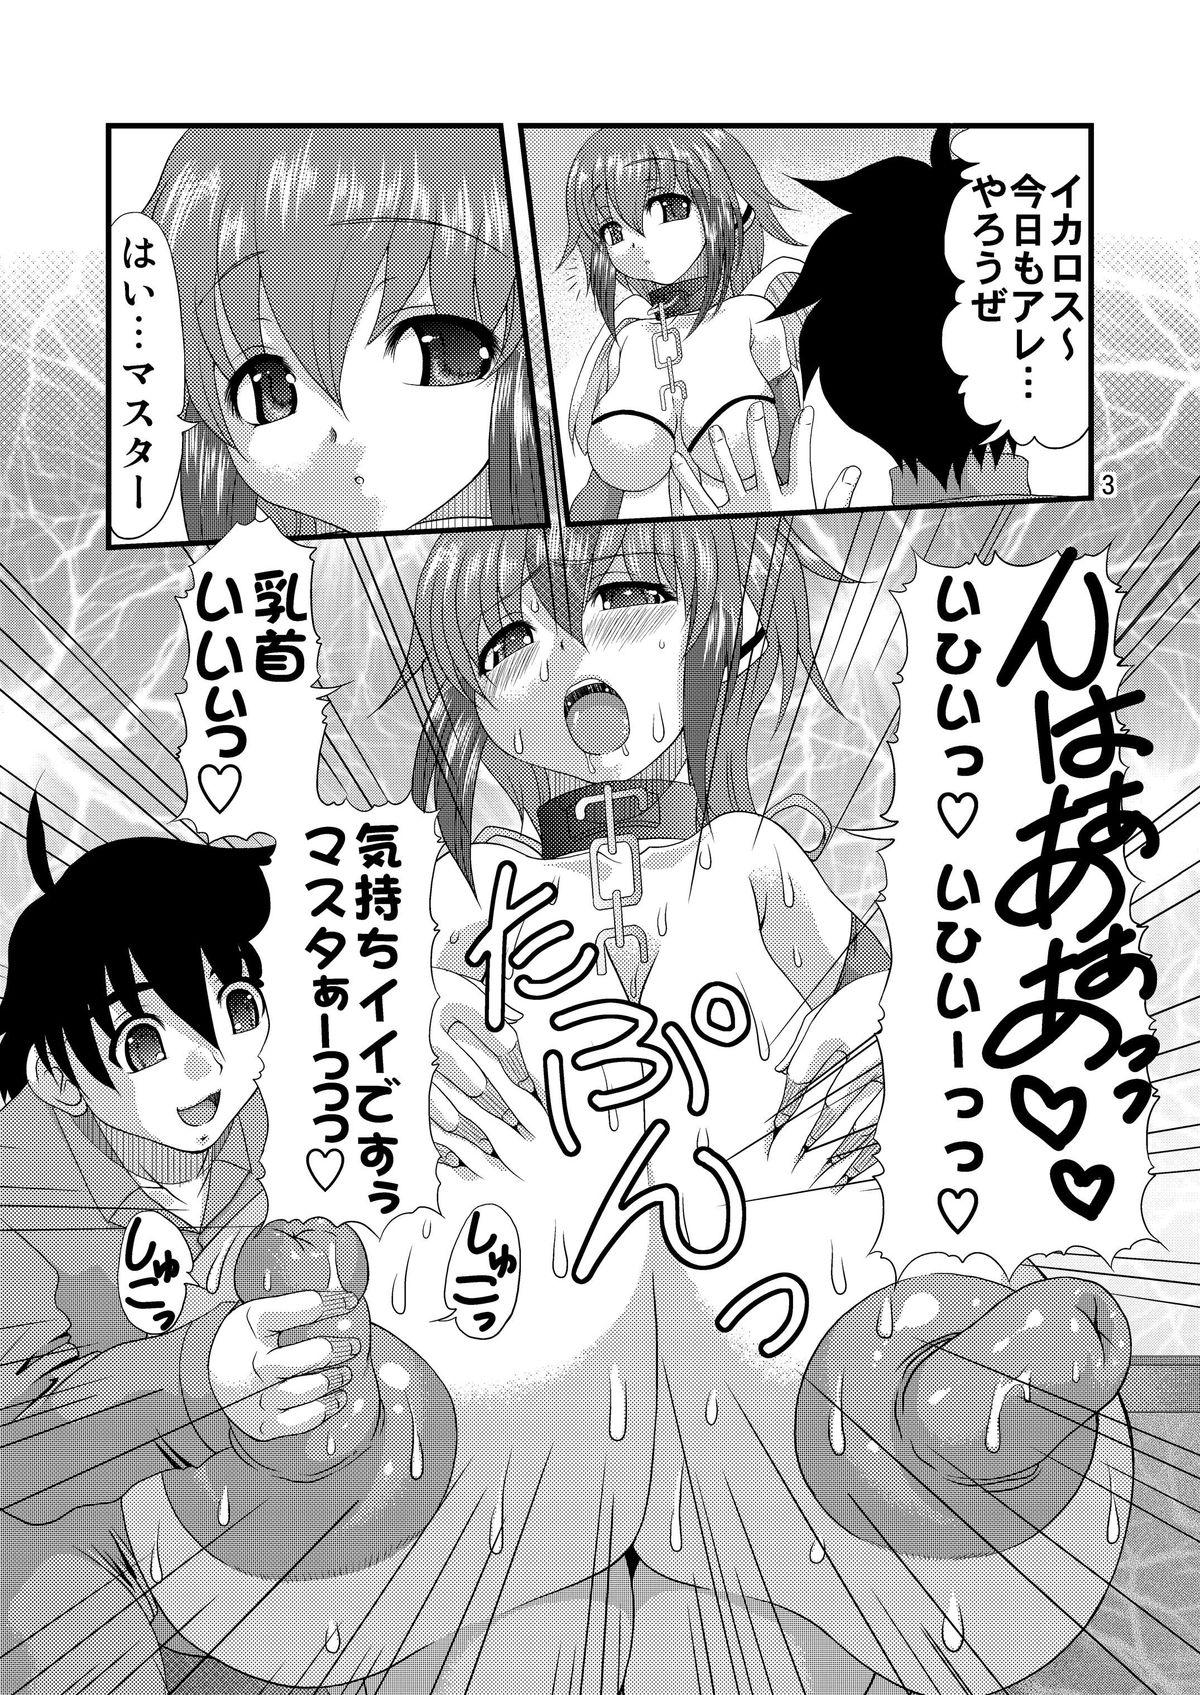 Real Chichi to Shiri to no Semegiai - Sora no otoshimono Babes - Page 2